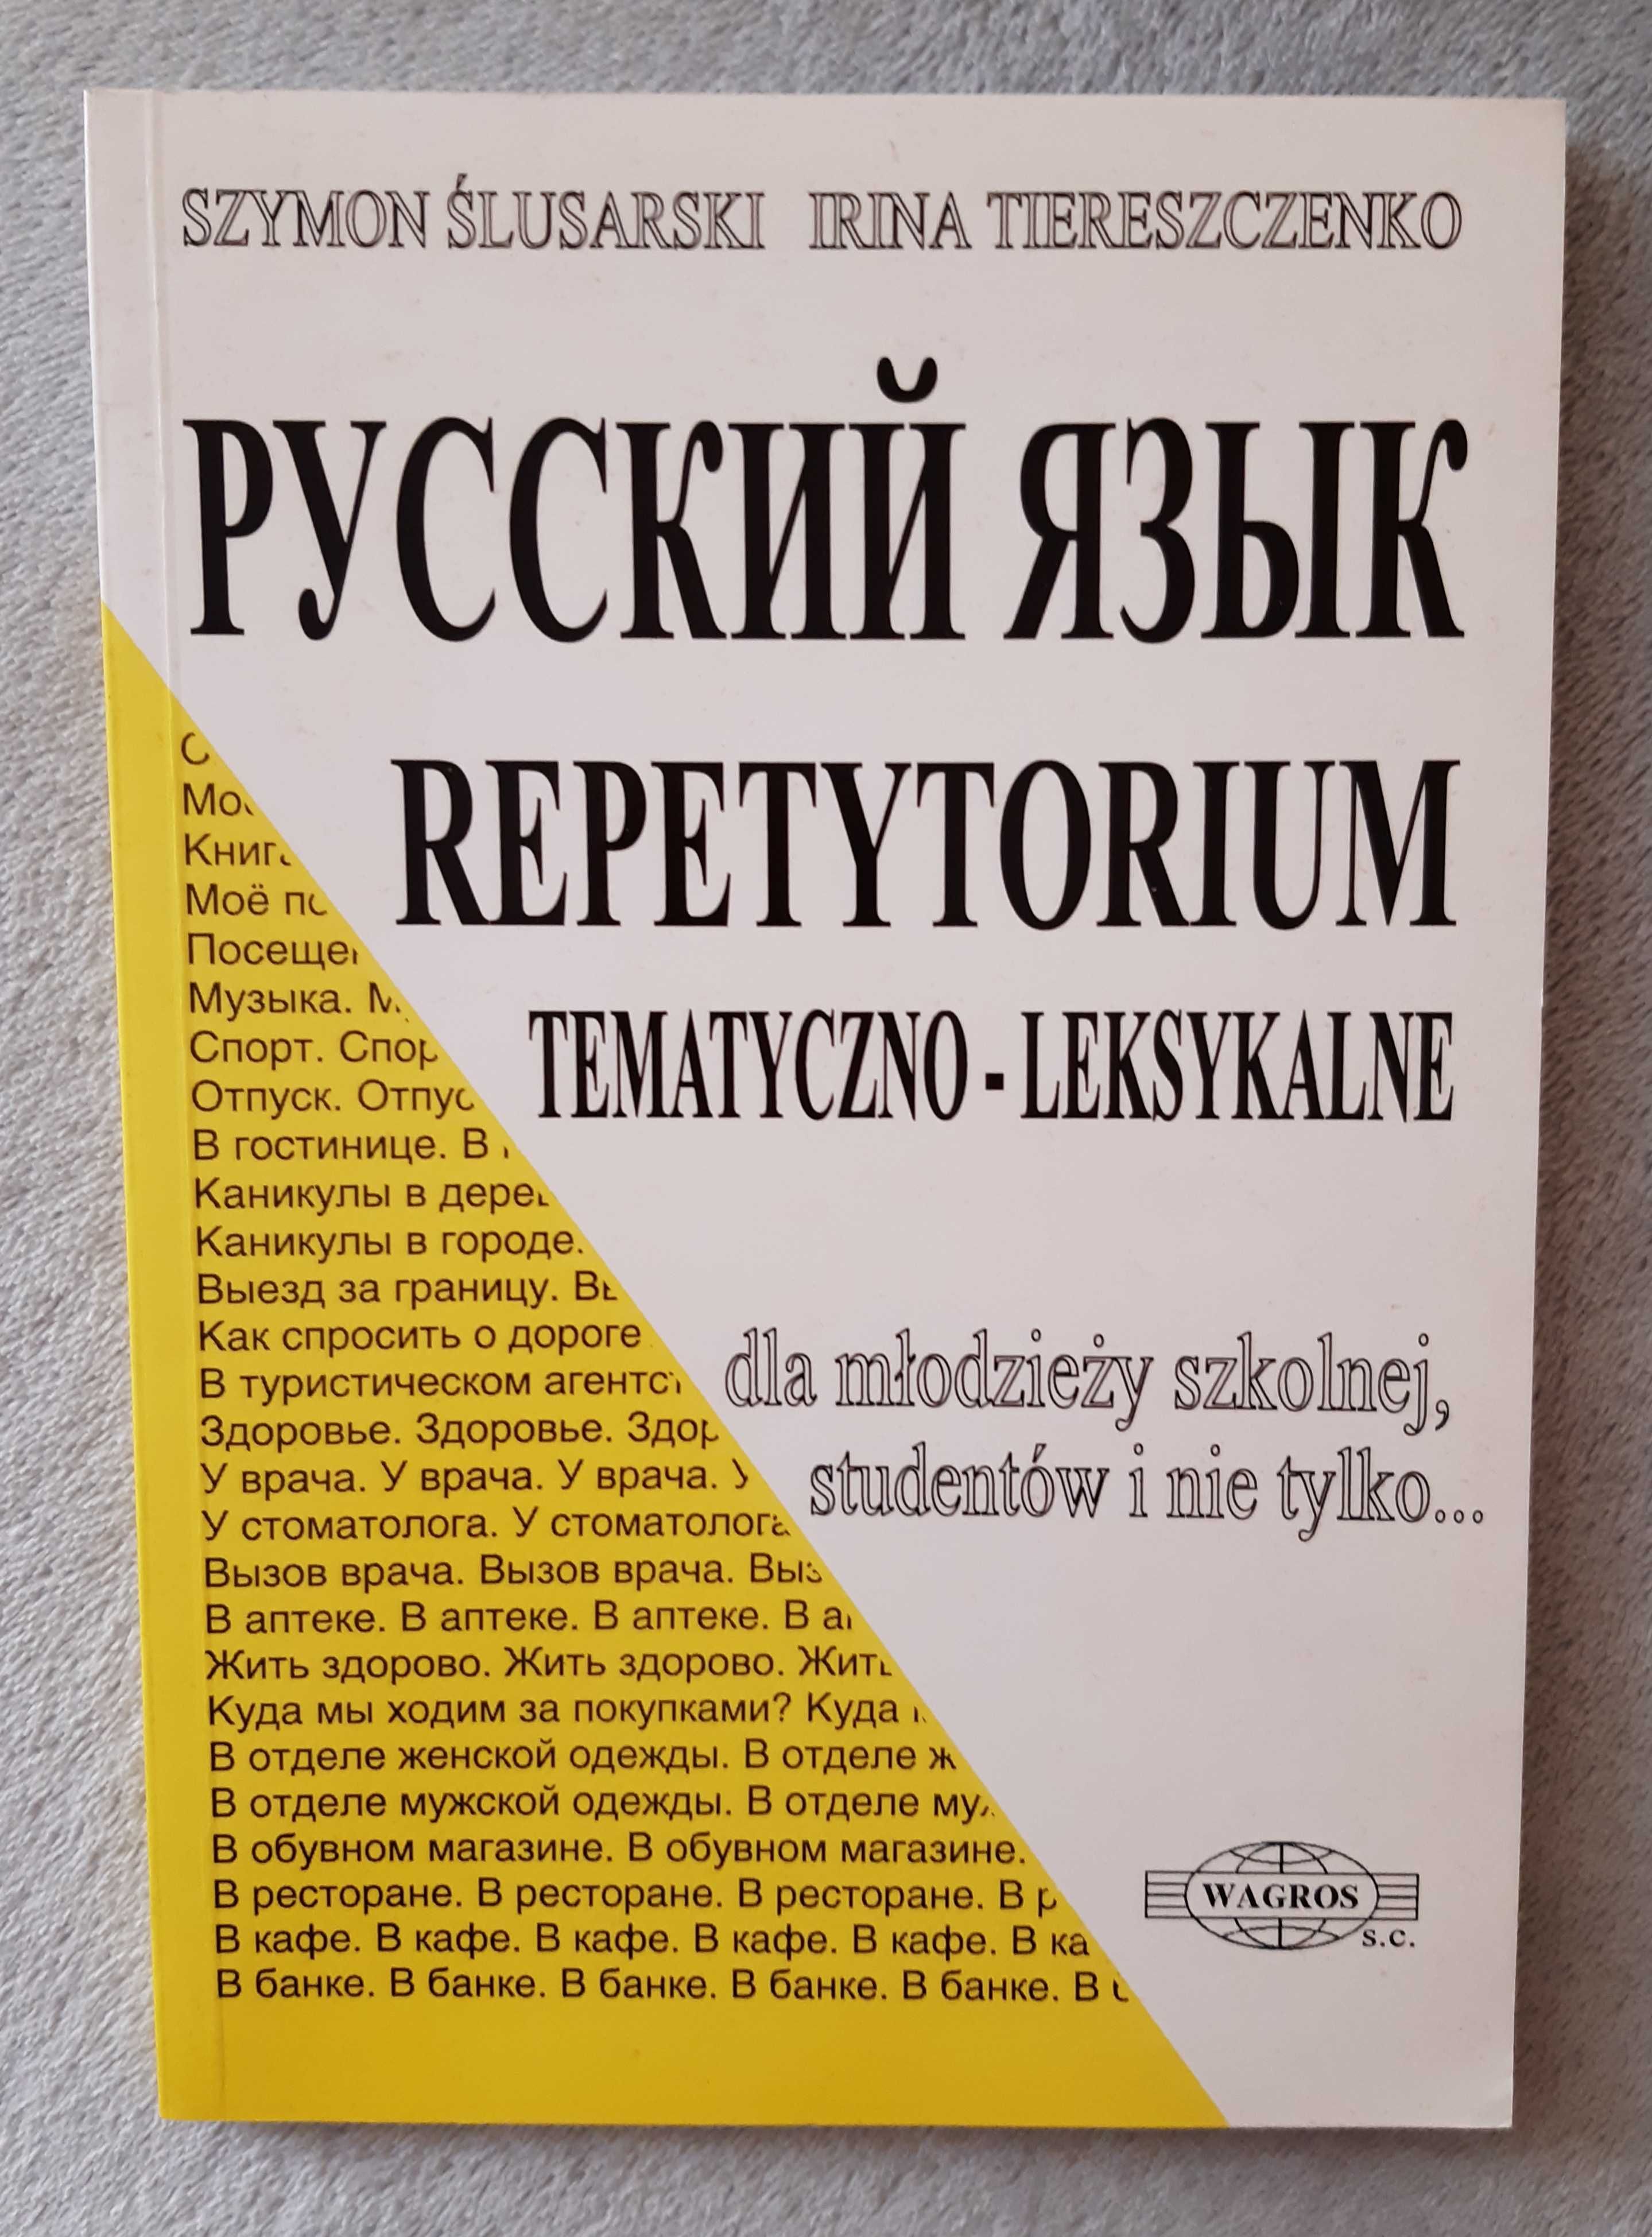 S. Ślusarski "Ruskij jazyk Repetytorium tematyczno-leksykalne"